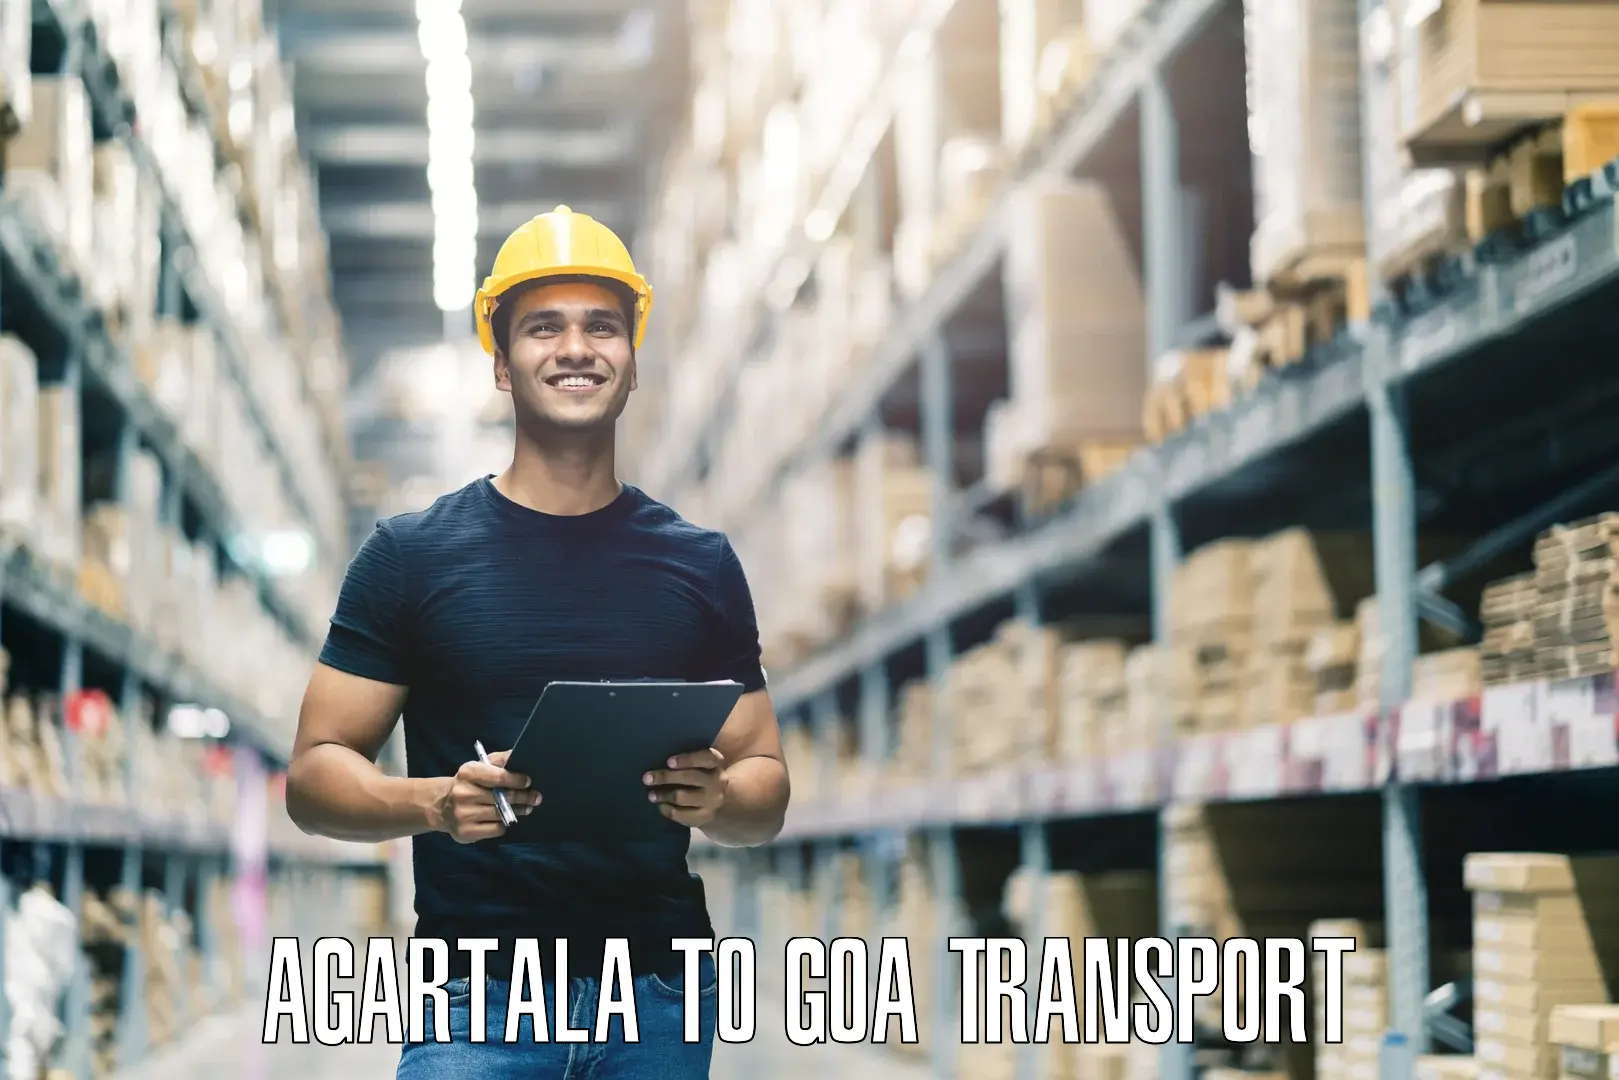 Bike shipping service Agartala to Goa